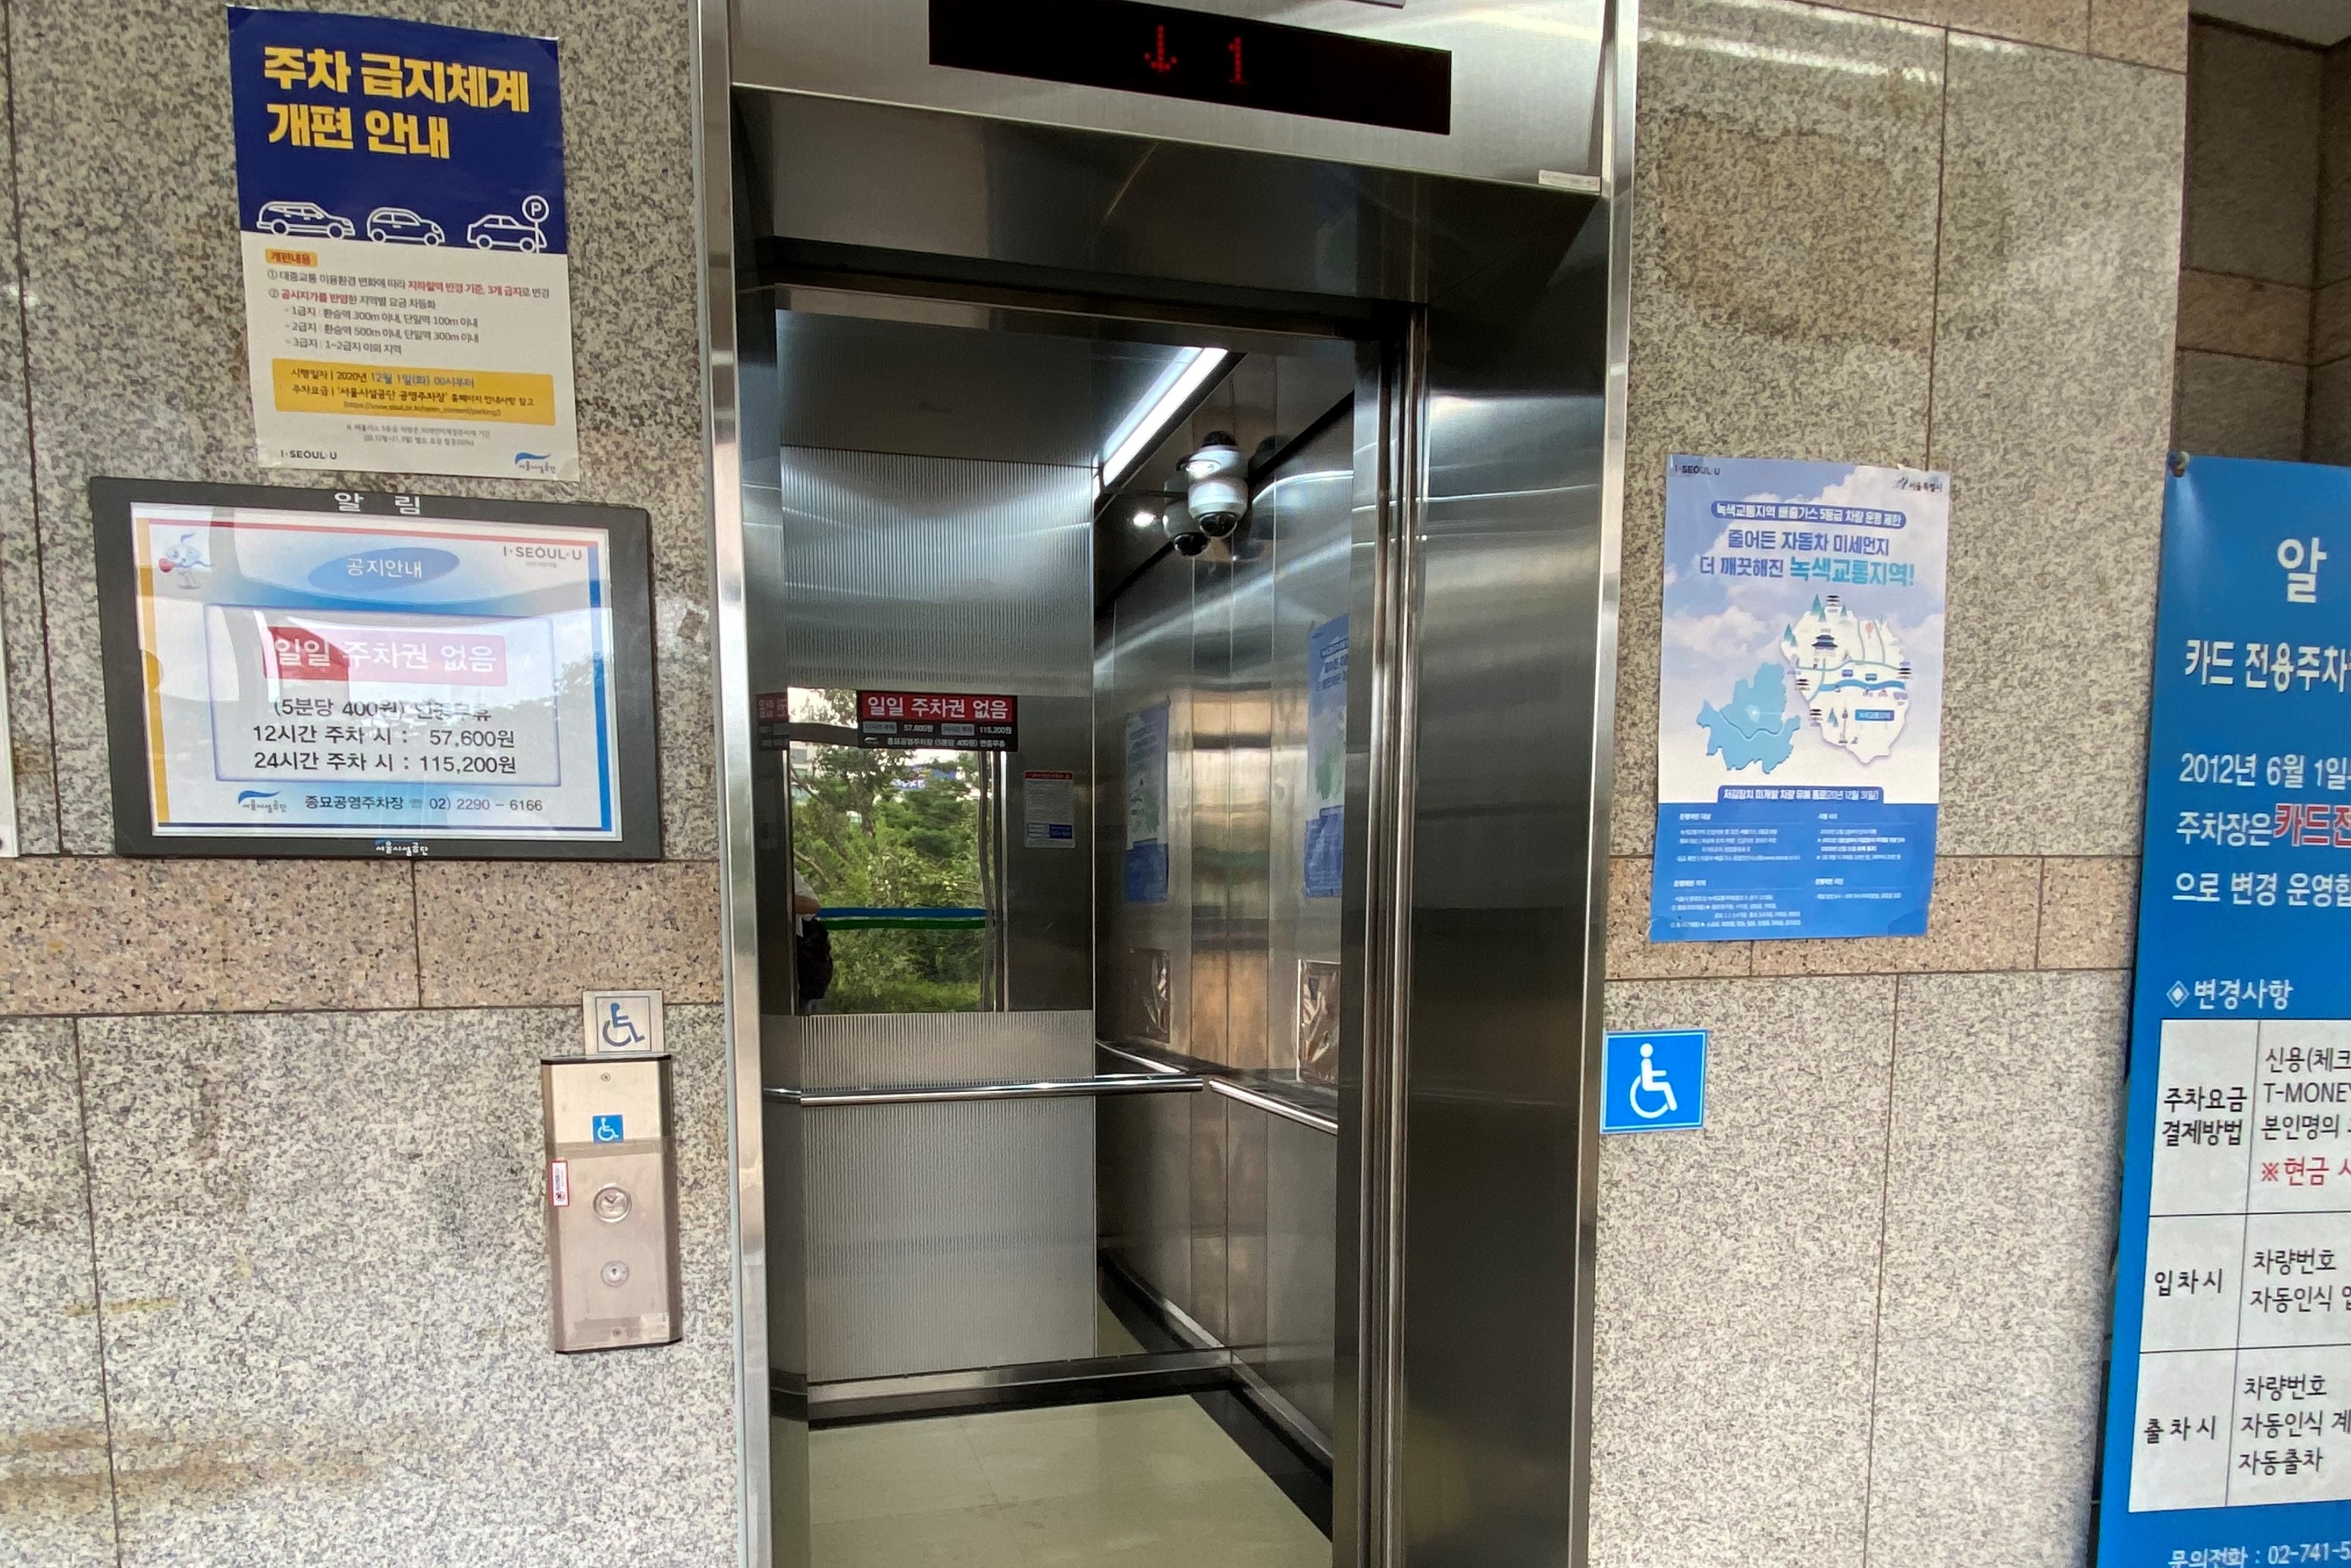 엘리베이터/장애인주차장0 : 종묘 공영주차장으로 통하는 엘리베이터 입구